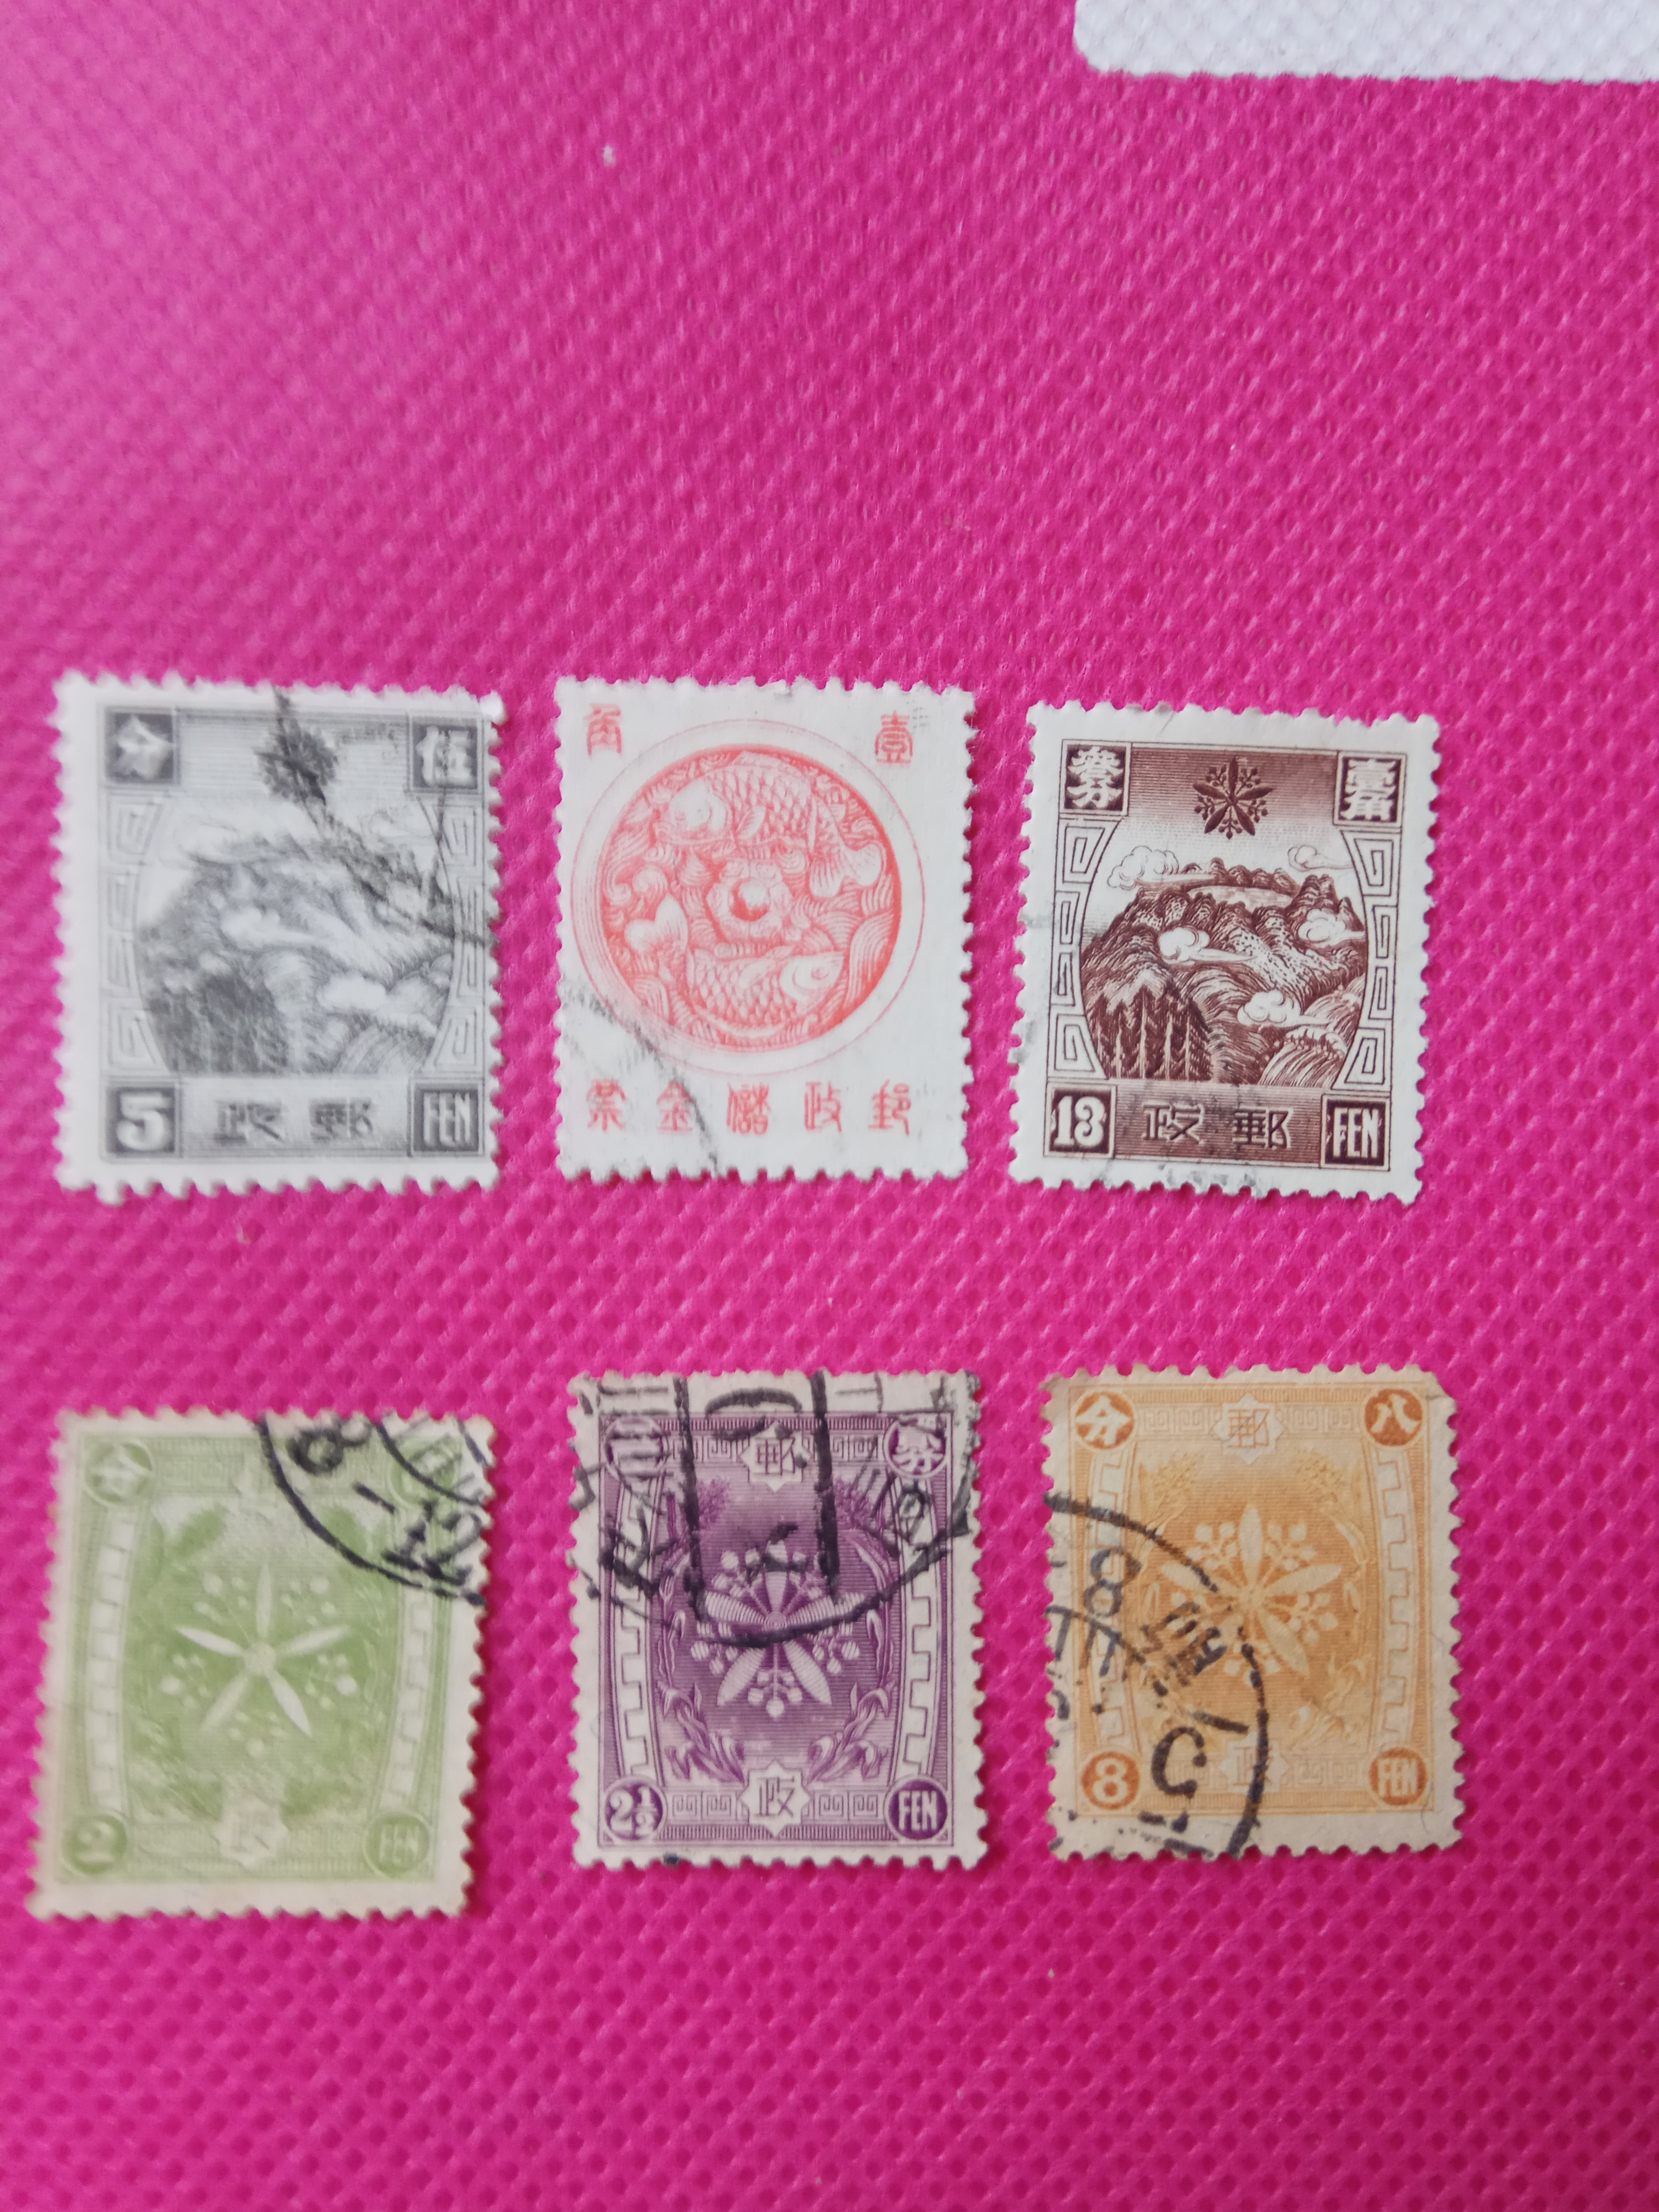 伪满洲邮票6枚不同,保真,支持任何鉴定,可放心购买